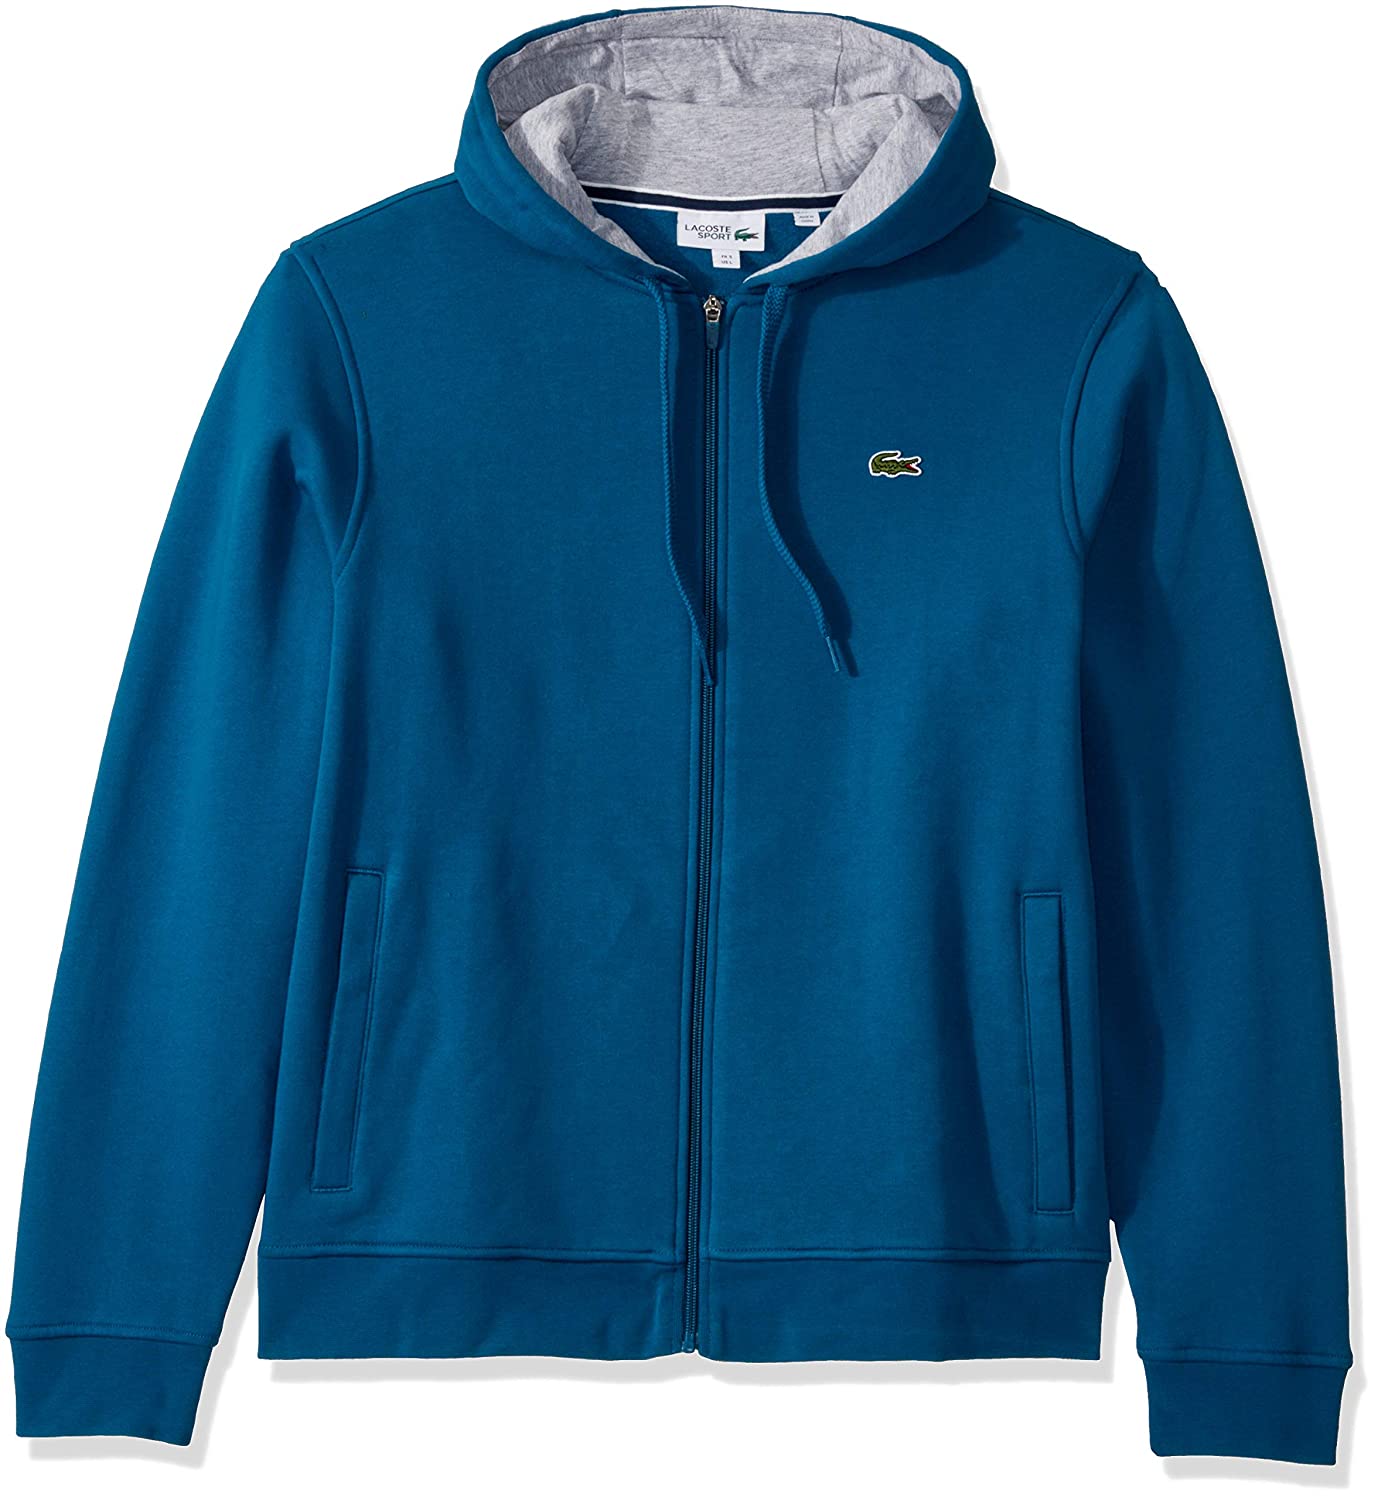 stylish hoodies for men - Lacoste Men's Sport Long Sleeve Fleece Full-Zip Hoodie